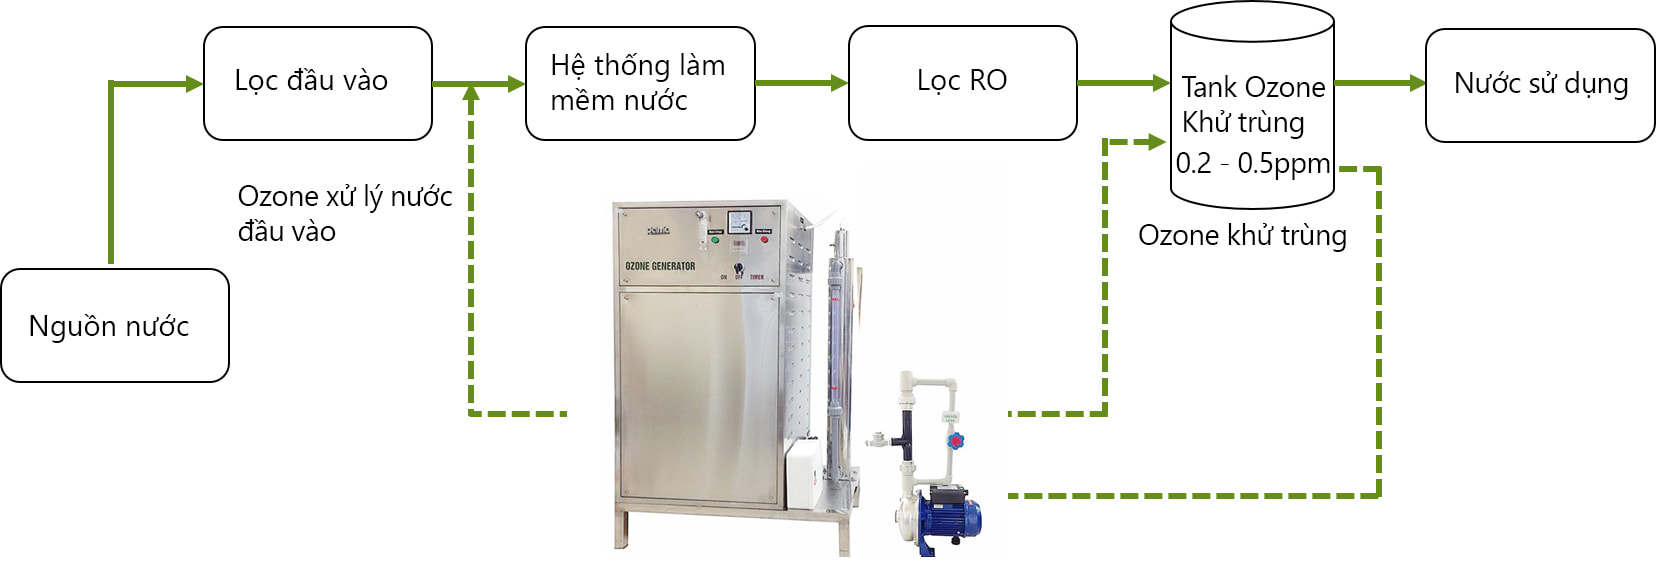 Mô hình ứng dụng Ozone trong xử lý nước sạch công nghiệp